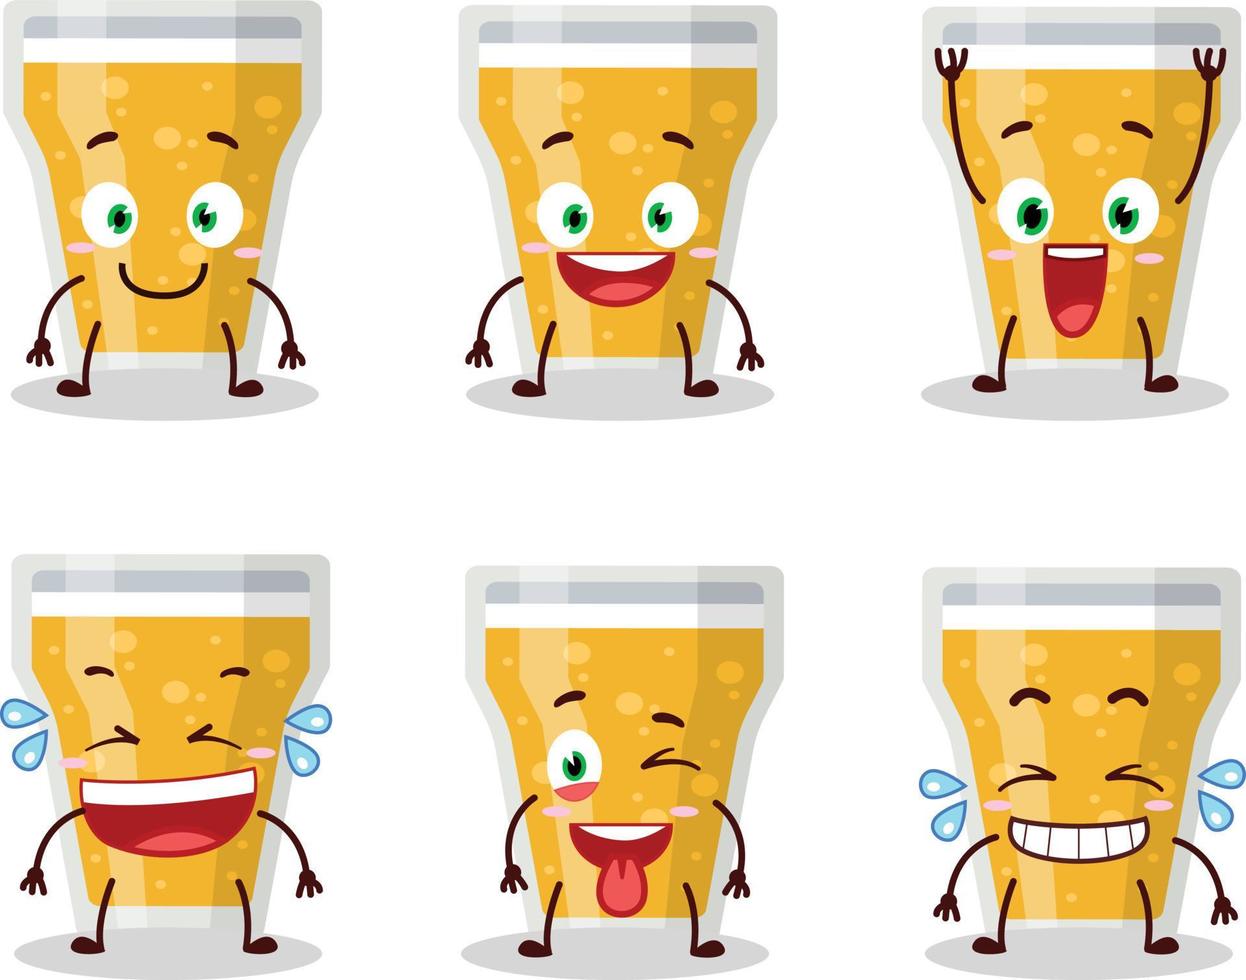 tekenfilm karakter van glas van bier met glimlach uitdrukking vector